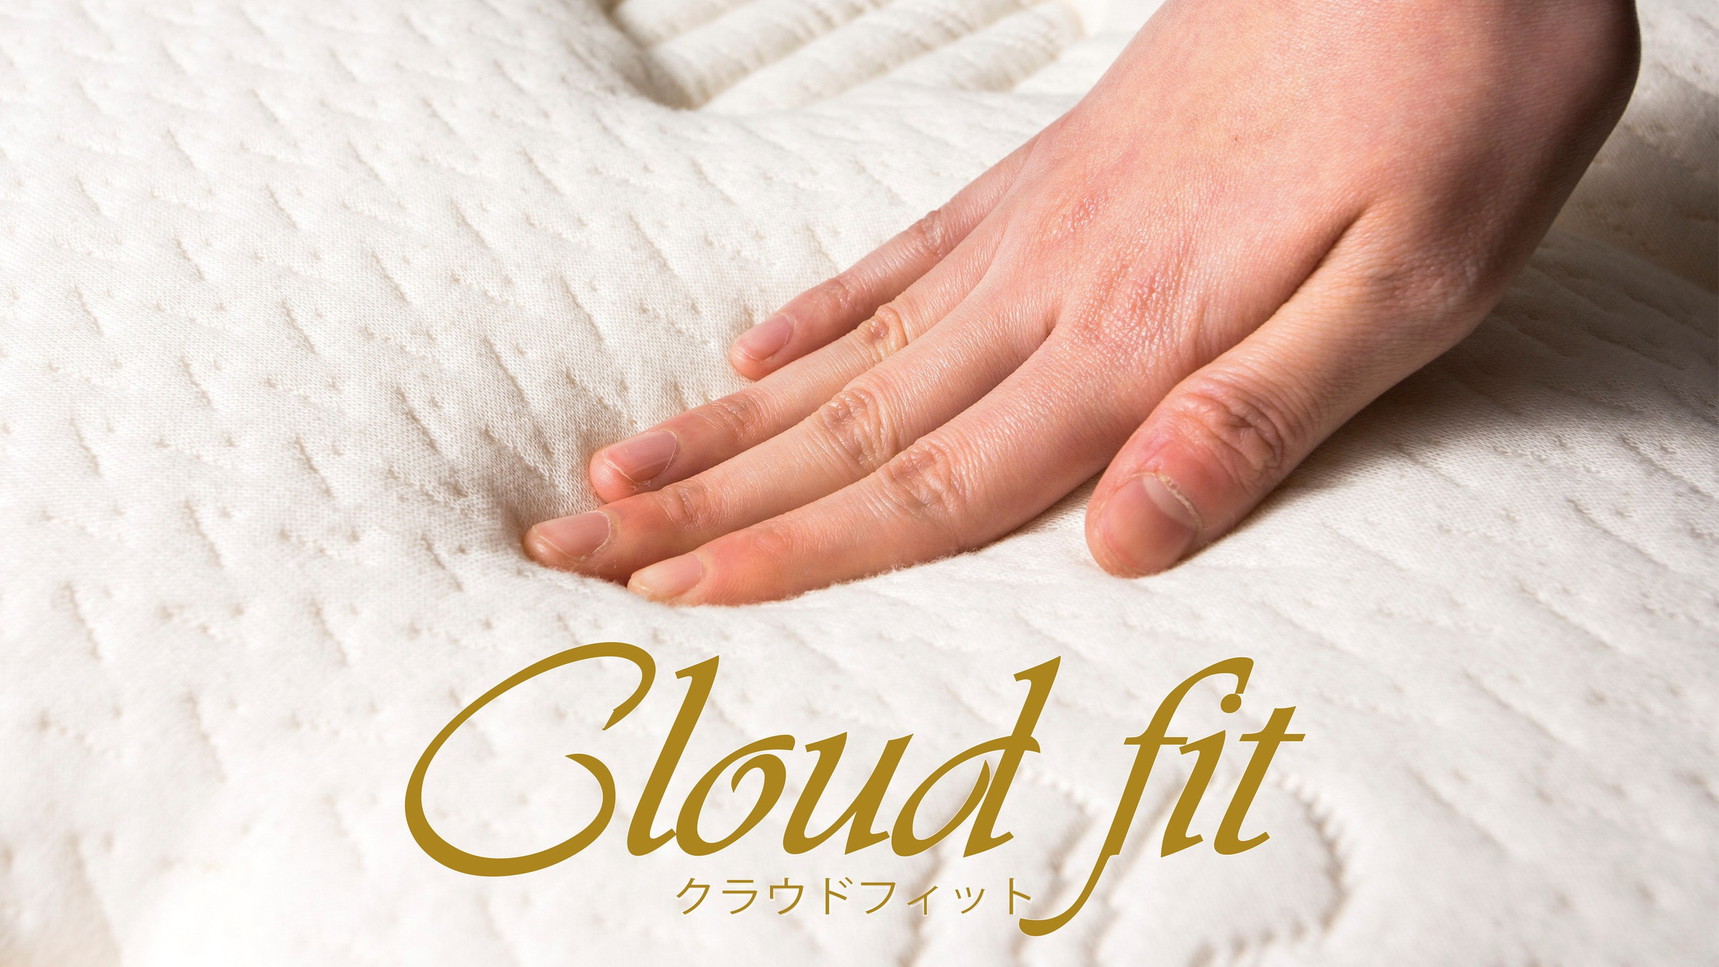 【Cloudfit】